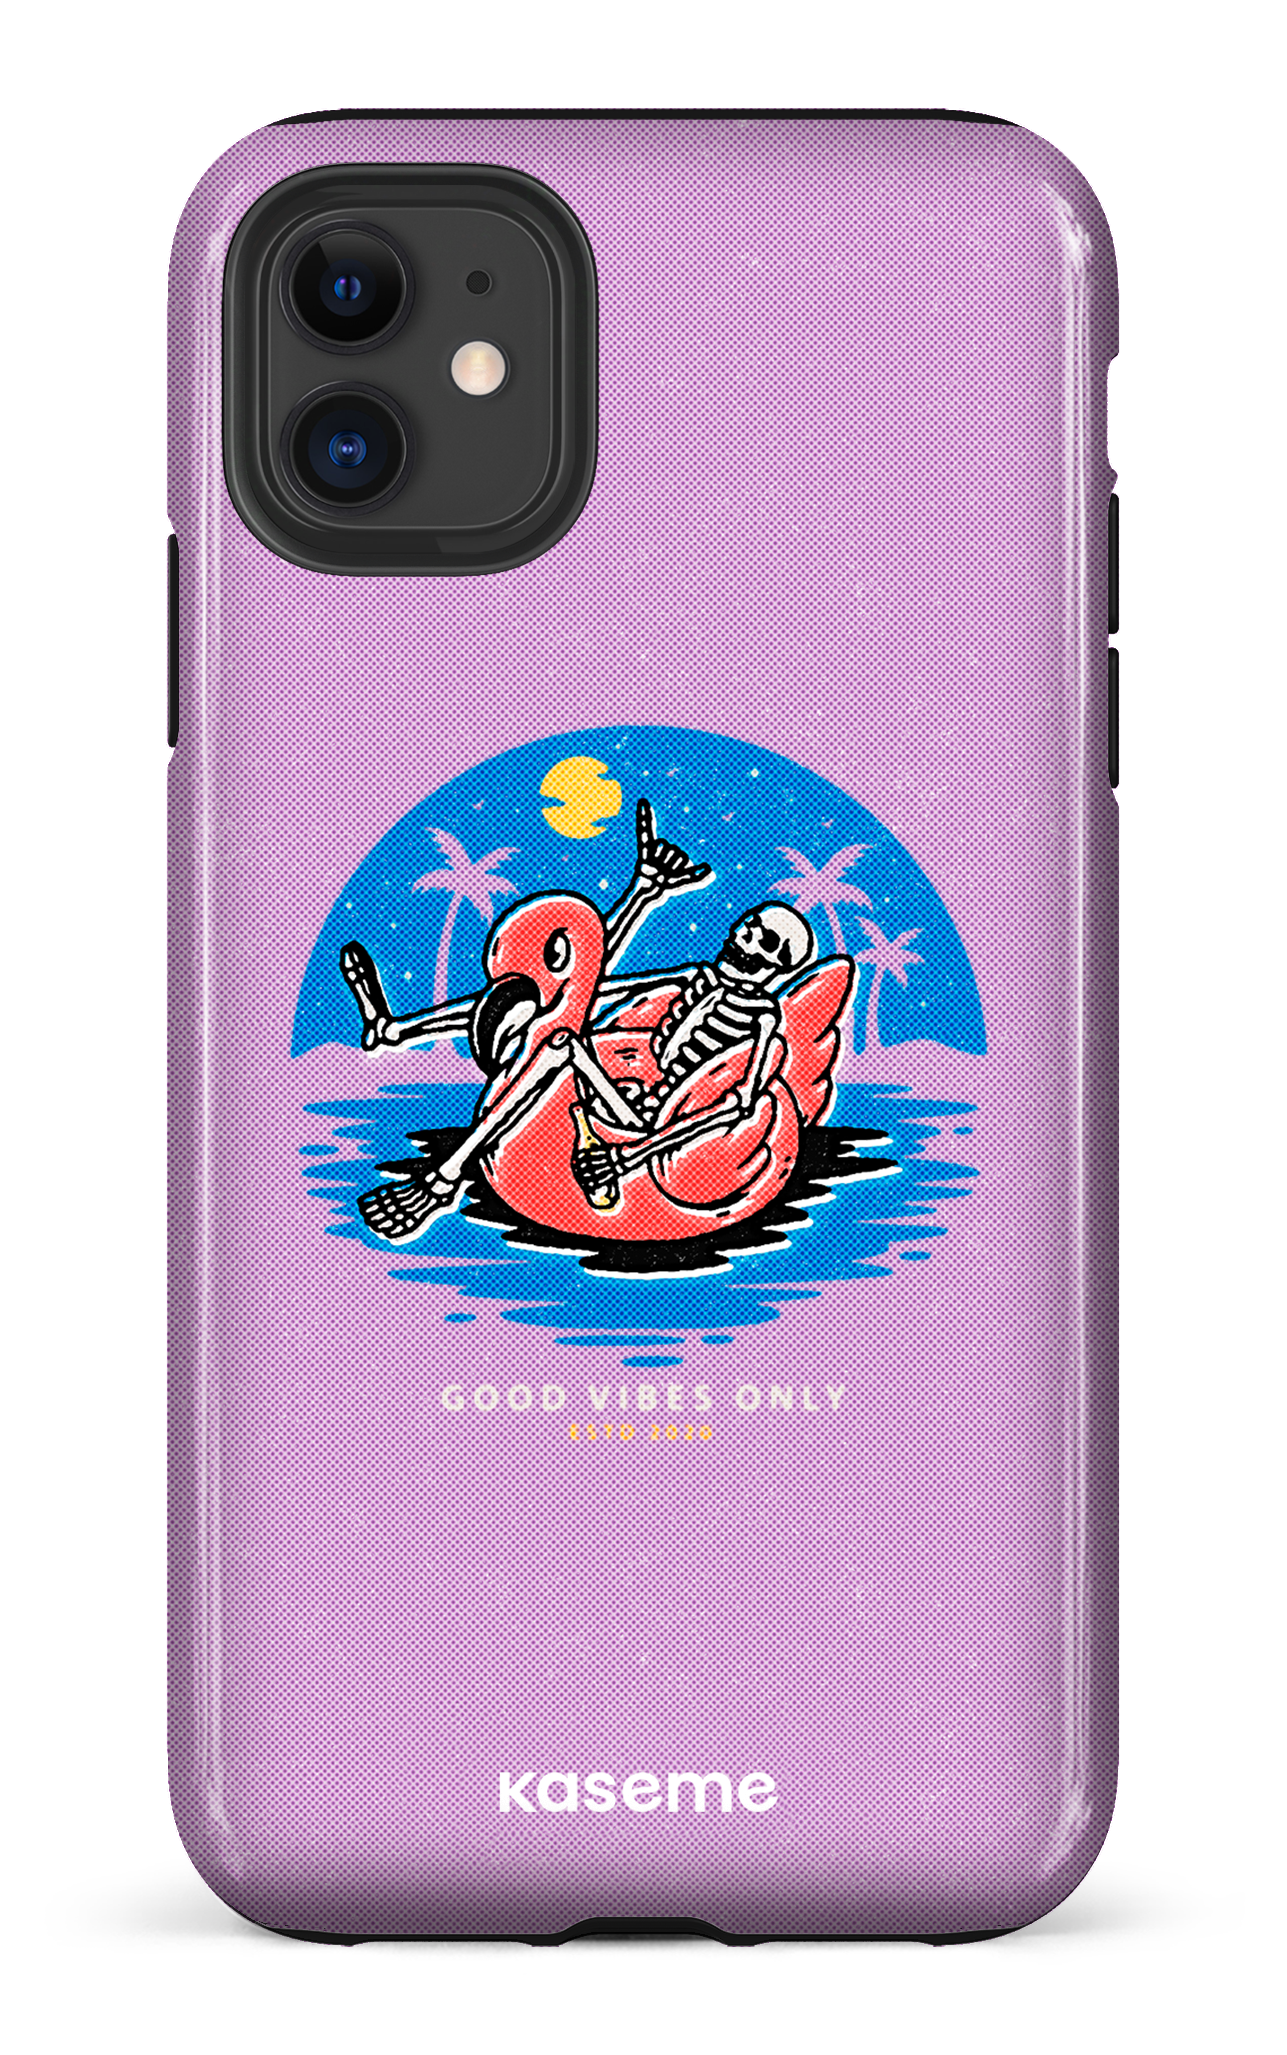 Seaside purple - iPhone 11